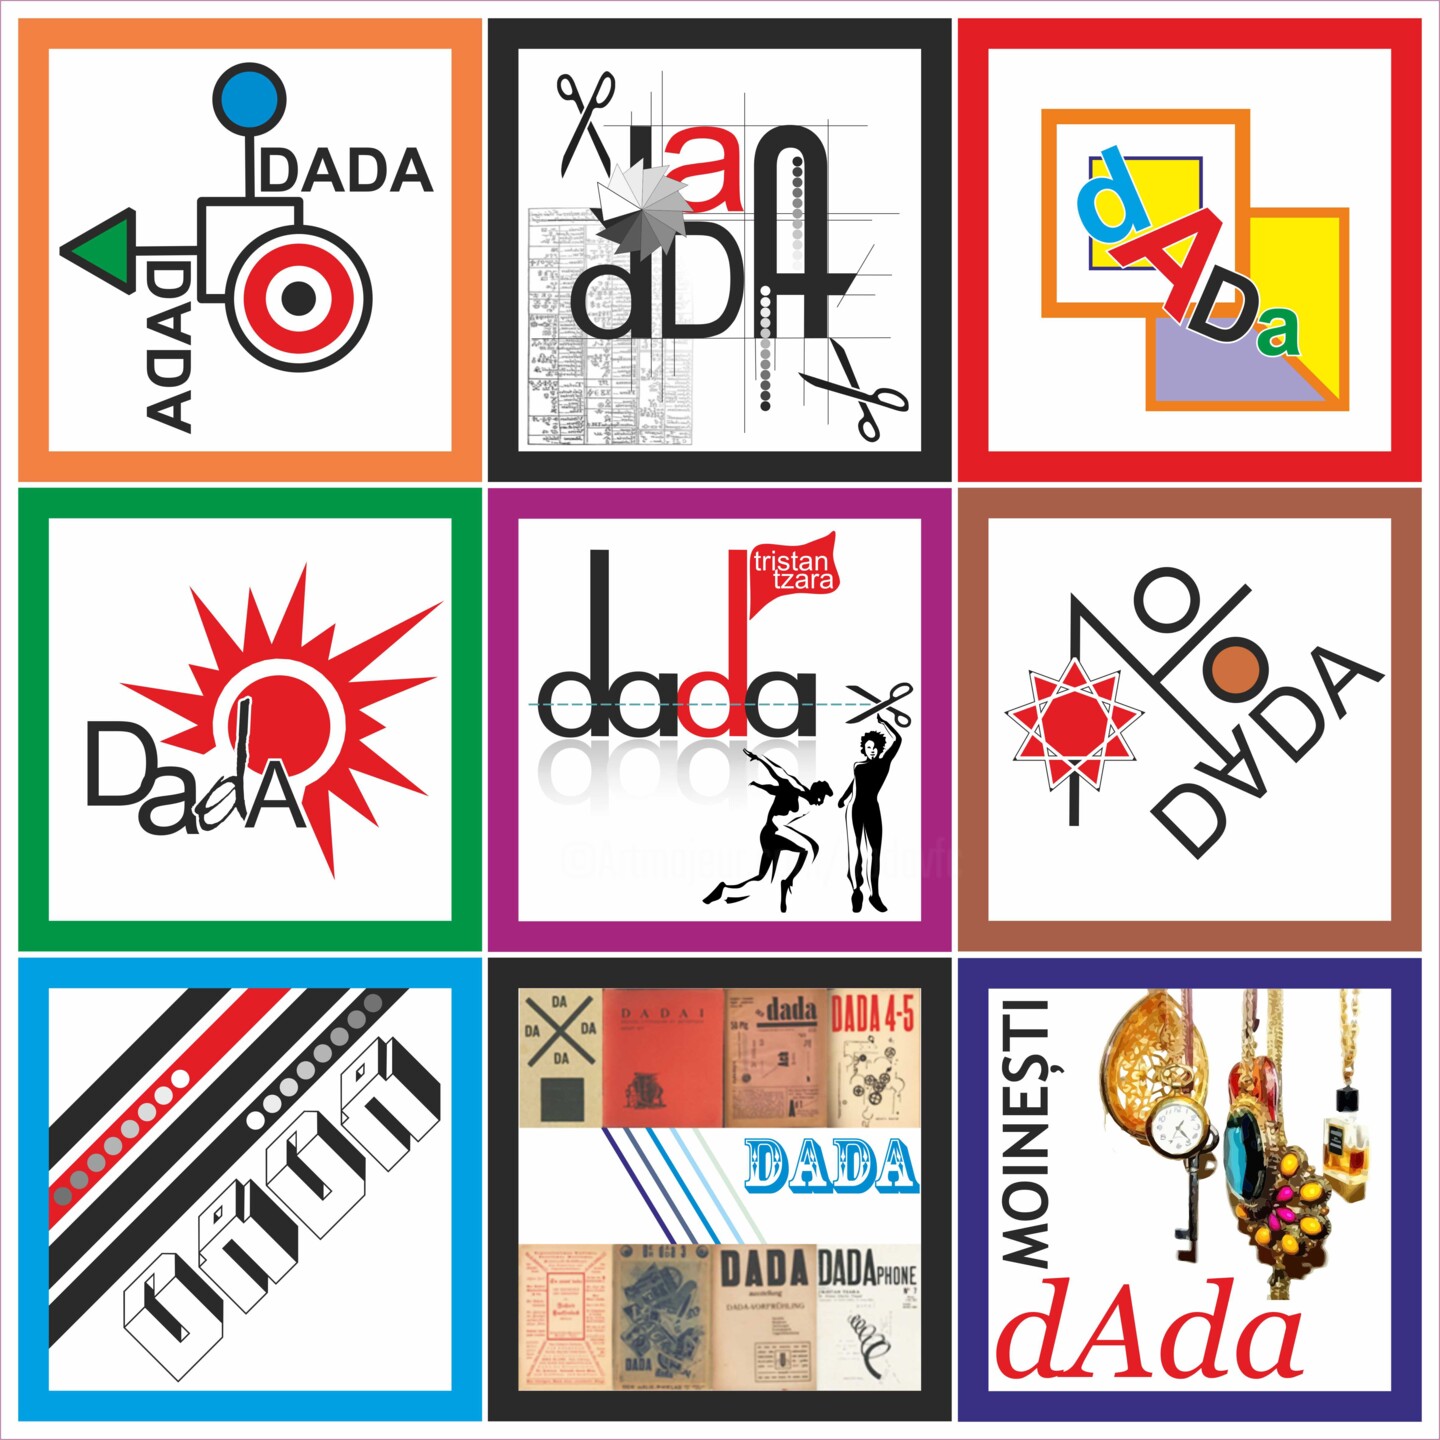 Viorel Florin Costea (DadaVFC) - Dada Logos